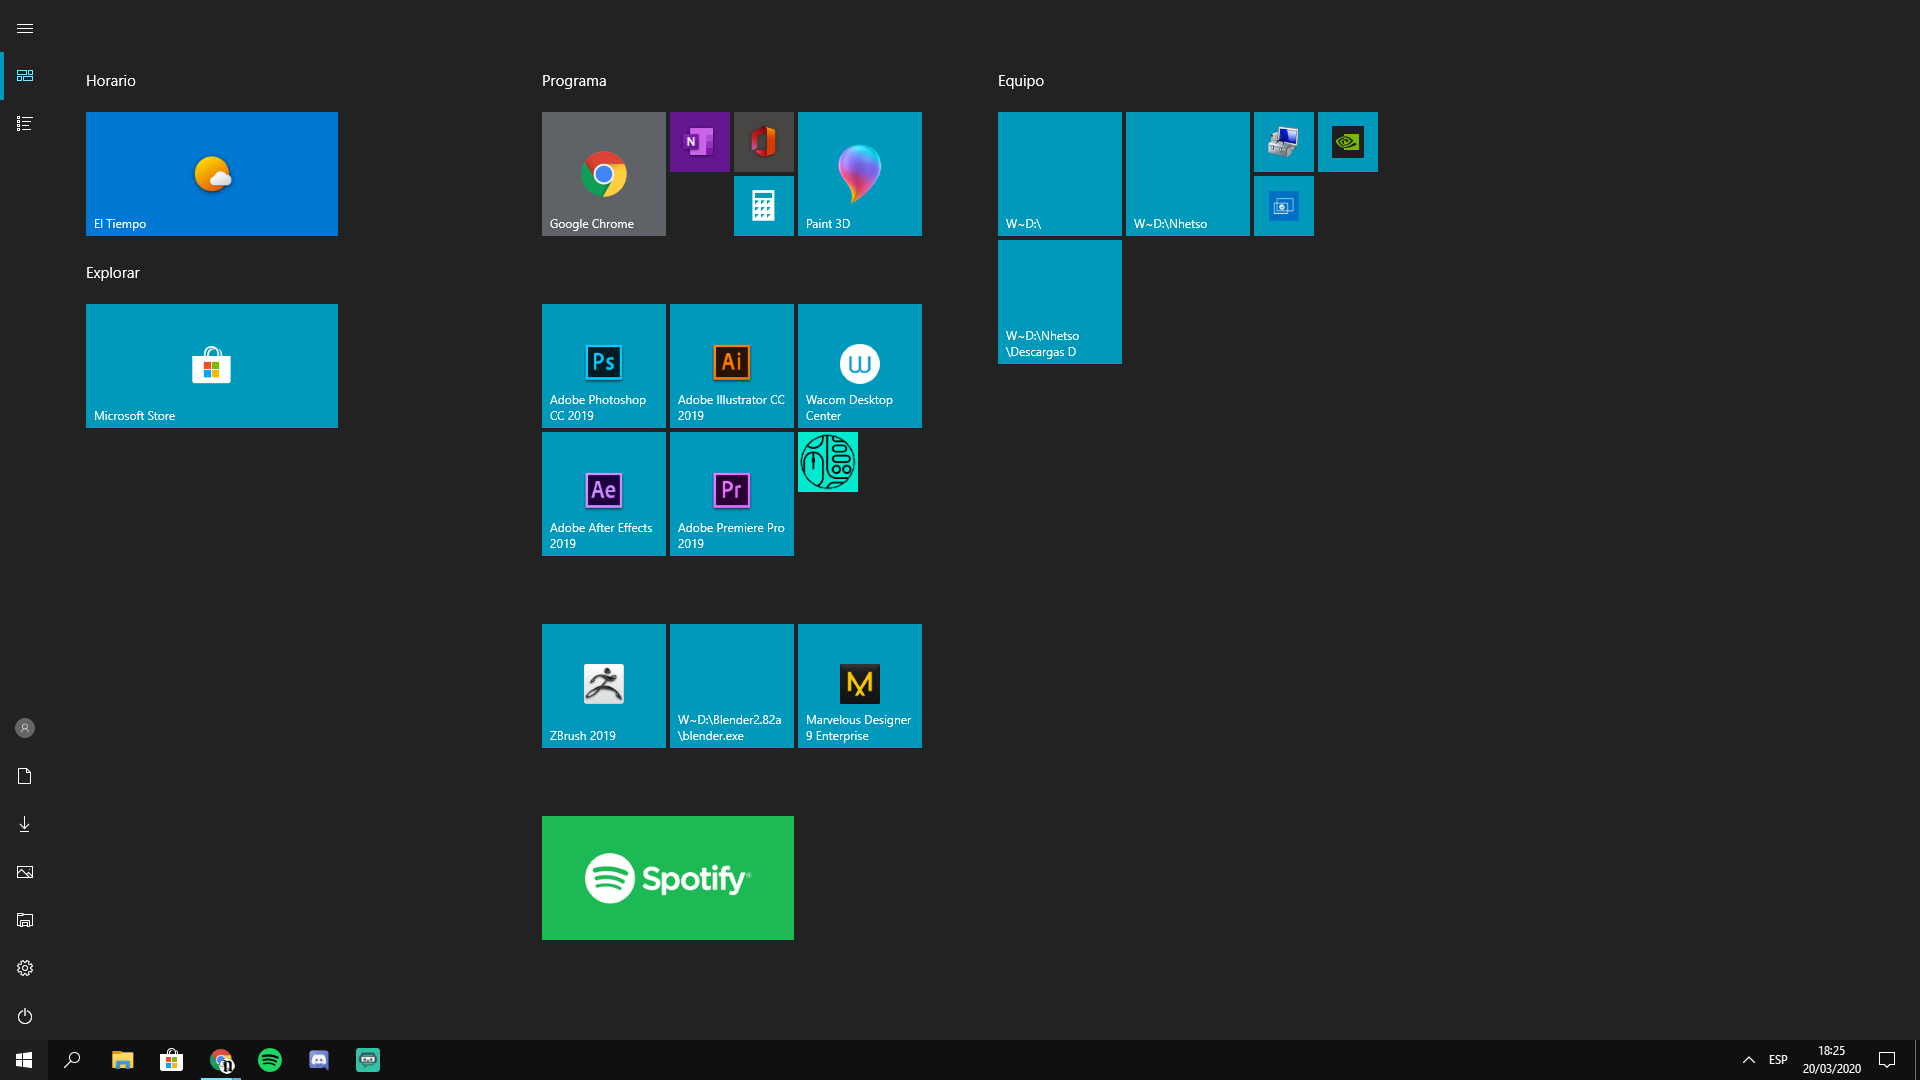 Impresionante no usado Dempsey problemas con iconos en iconos anclados de inicio windows 10. y error -  Microsoft Community